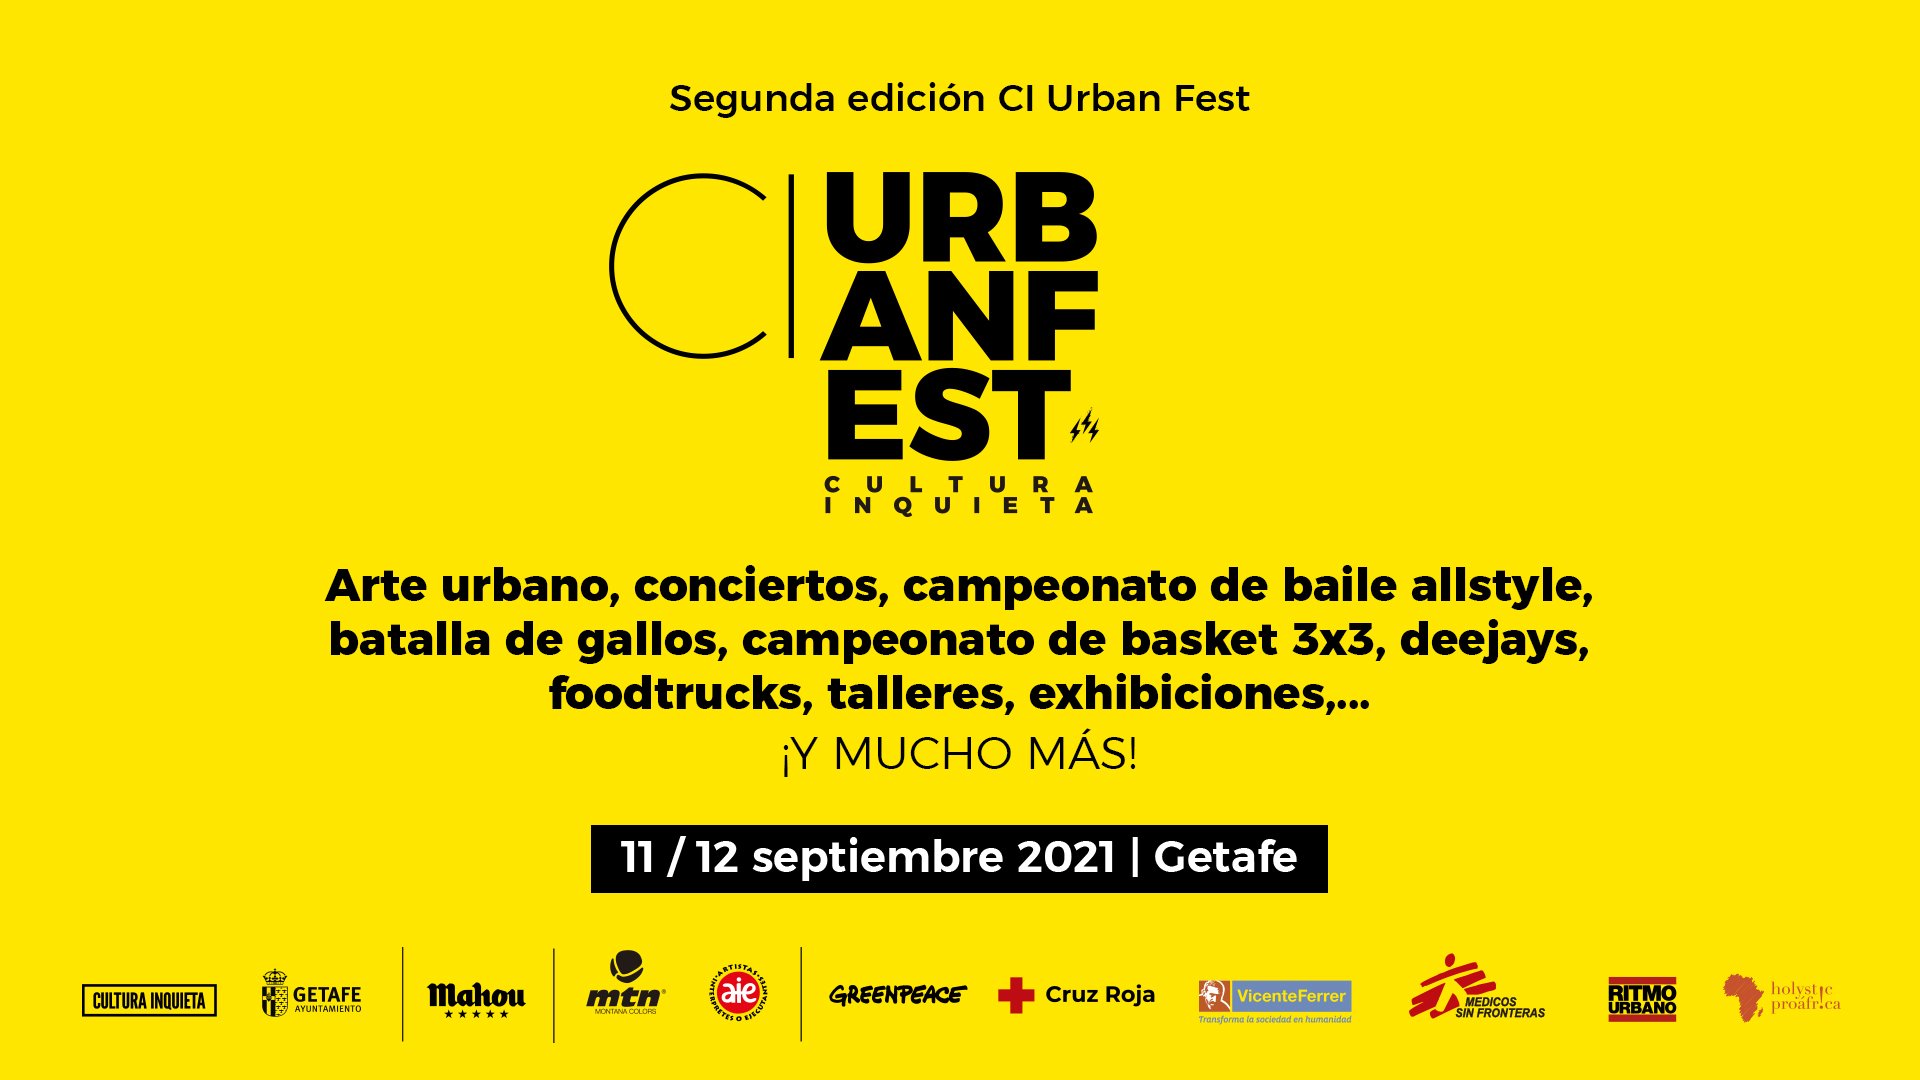 Participad bailando, rapeando, pintando o jugando al baloncesto en el CI Urban Fest de Cultura Inquieta